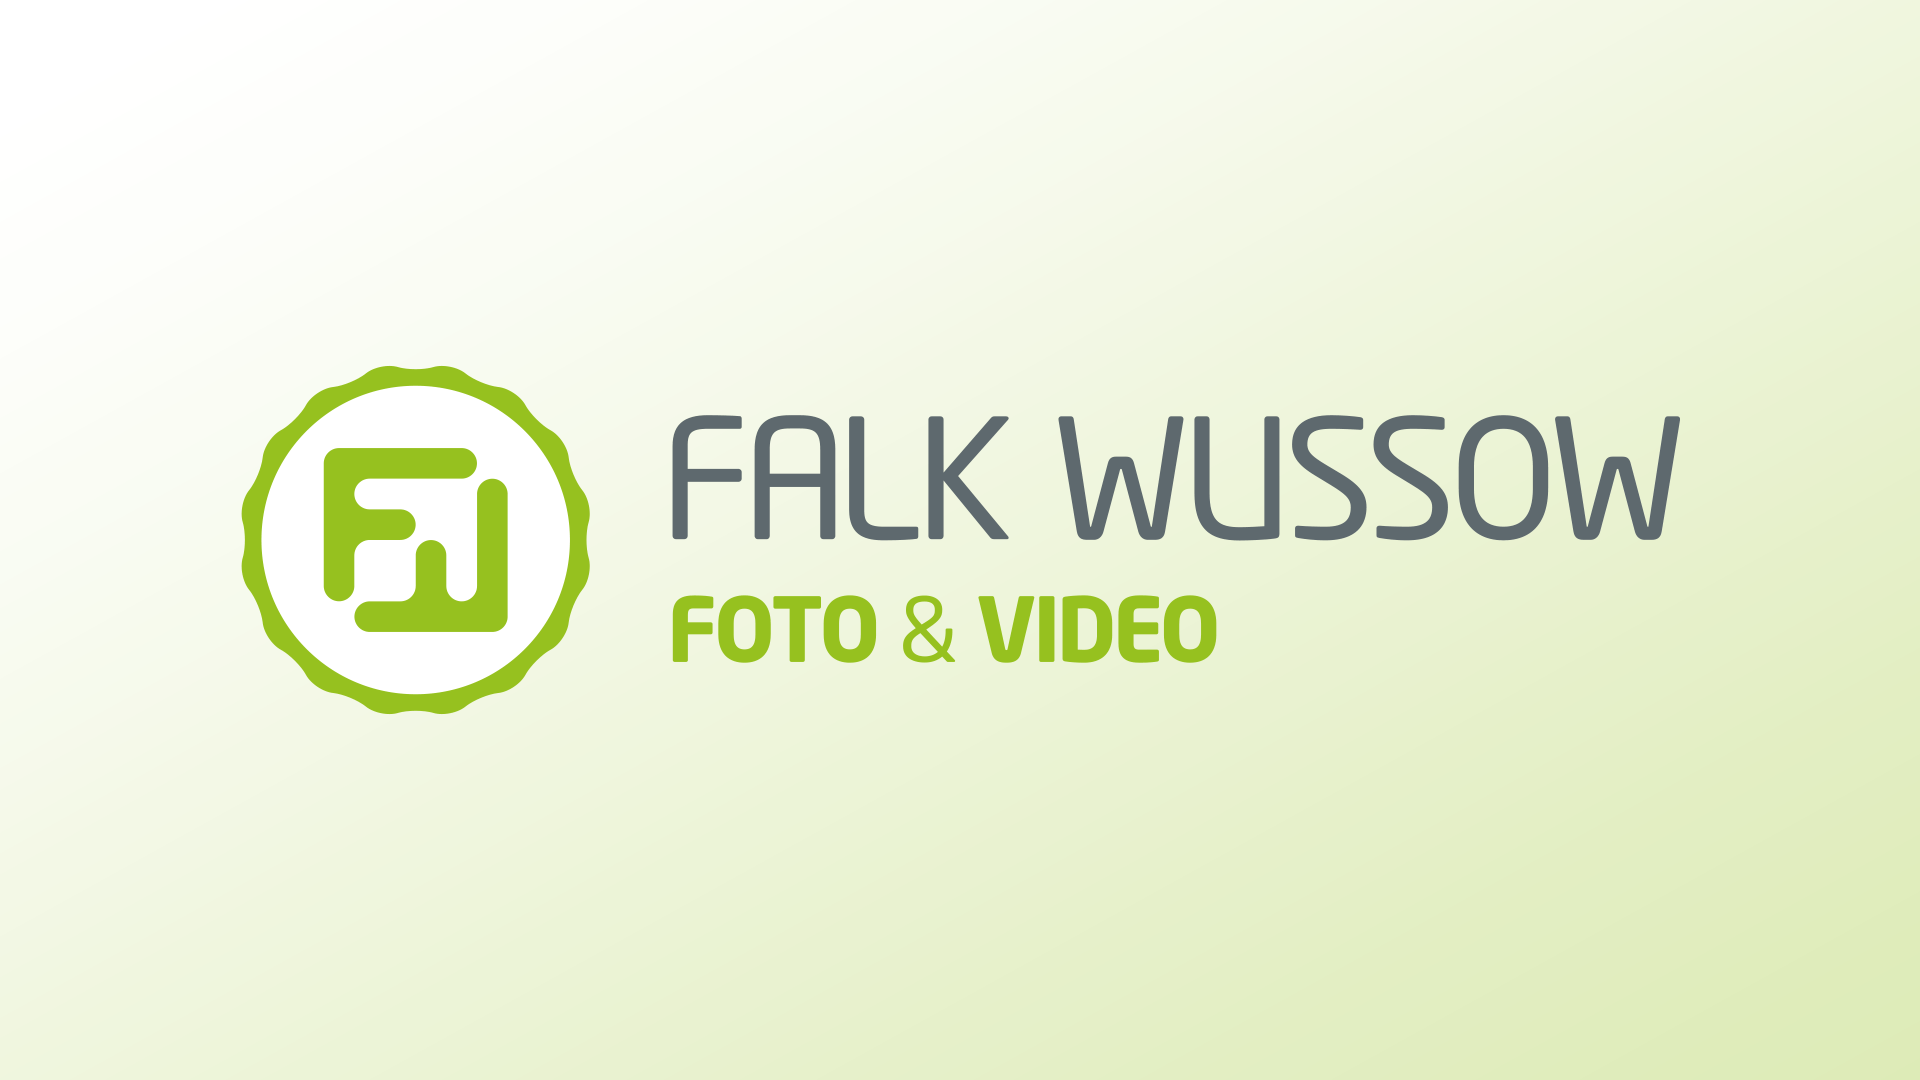 (c) Falk-wussow.de